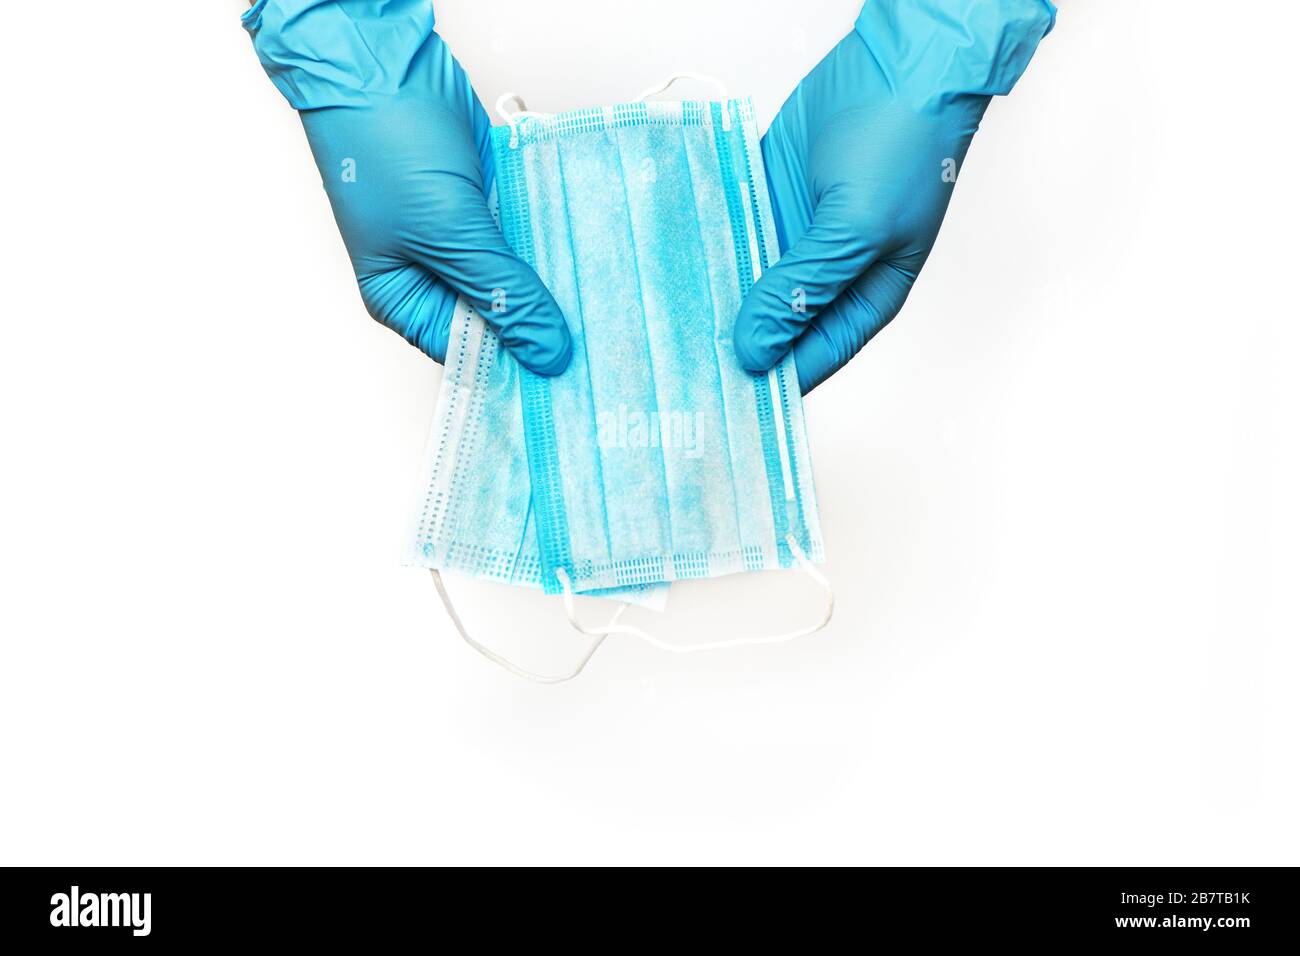 Mani in guanti per uso medico che trattengono maschere facciali di protezione isolate su sfondo bianco. Concetto di protezione del coronavirus Foto Stock